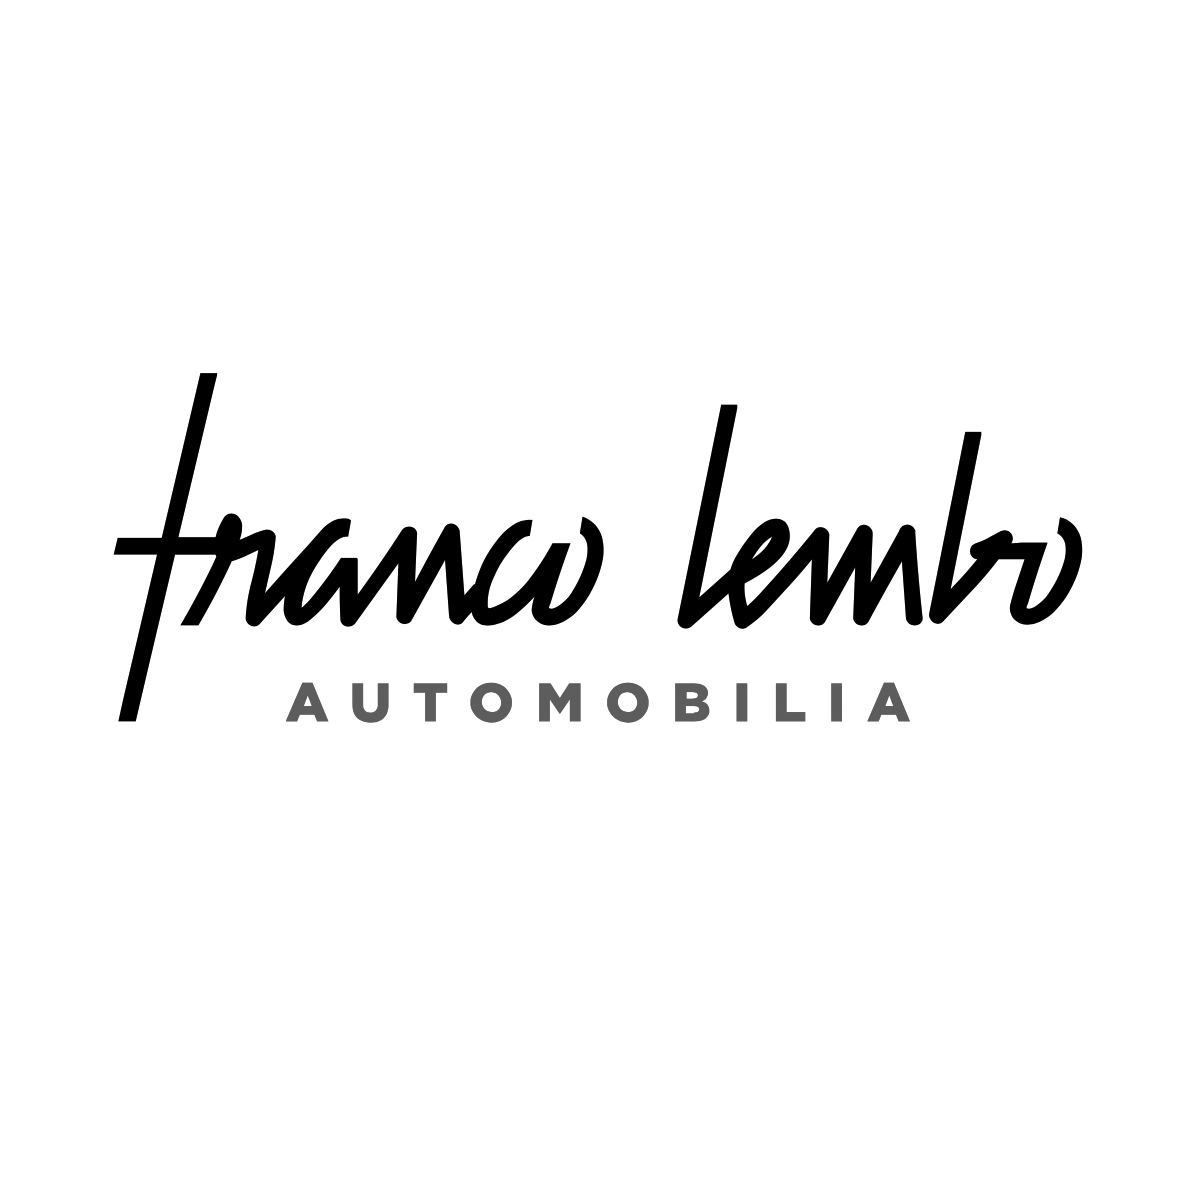 Franco Lembo